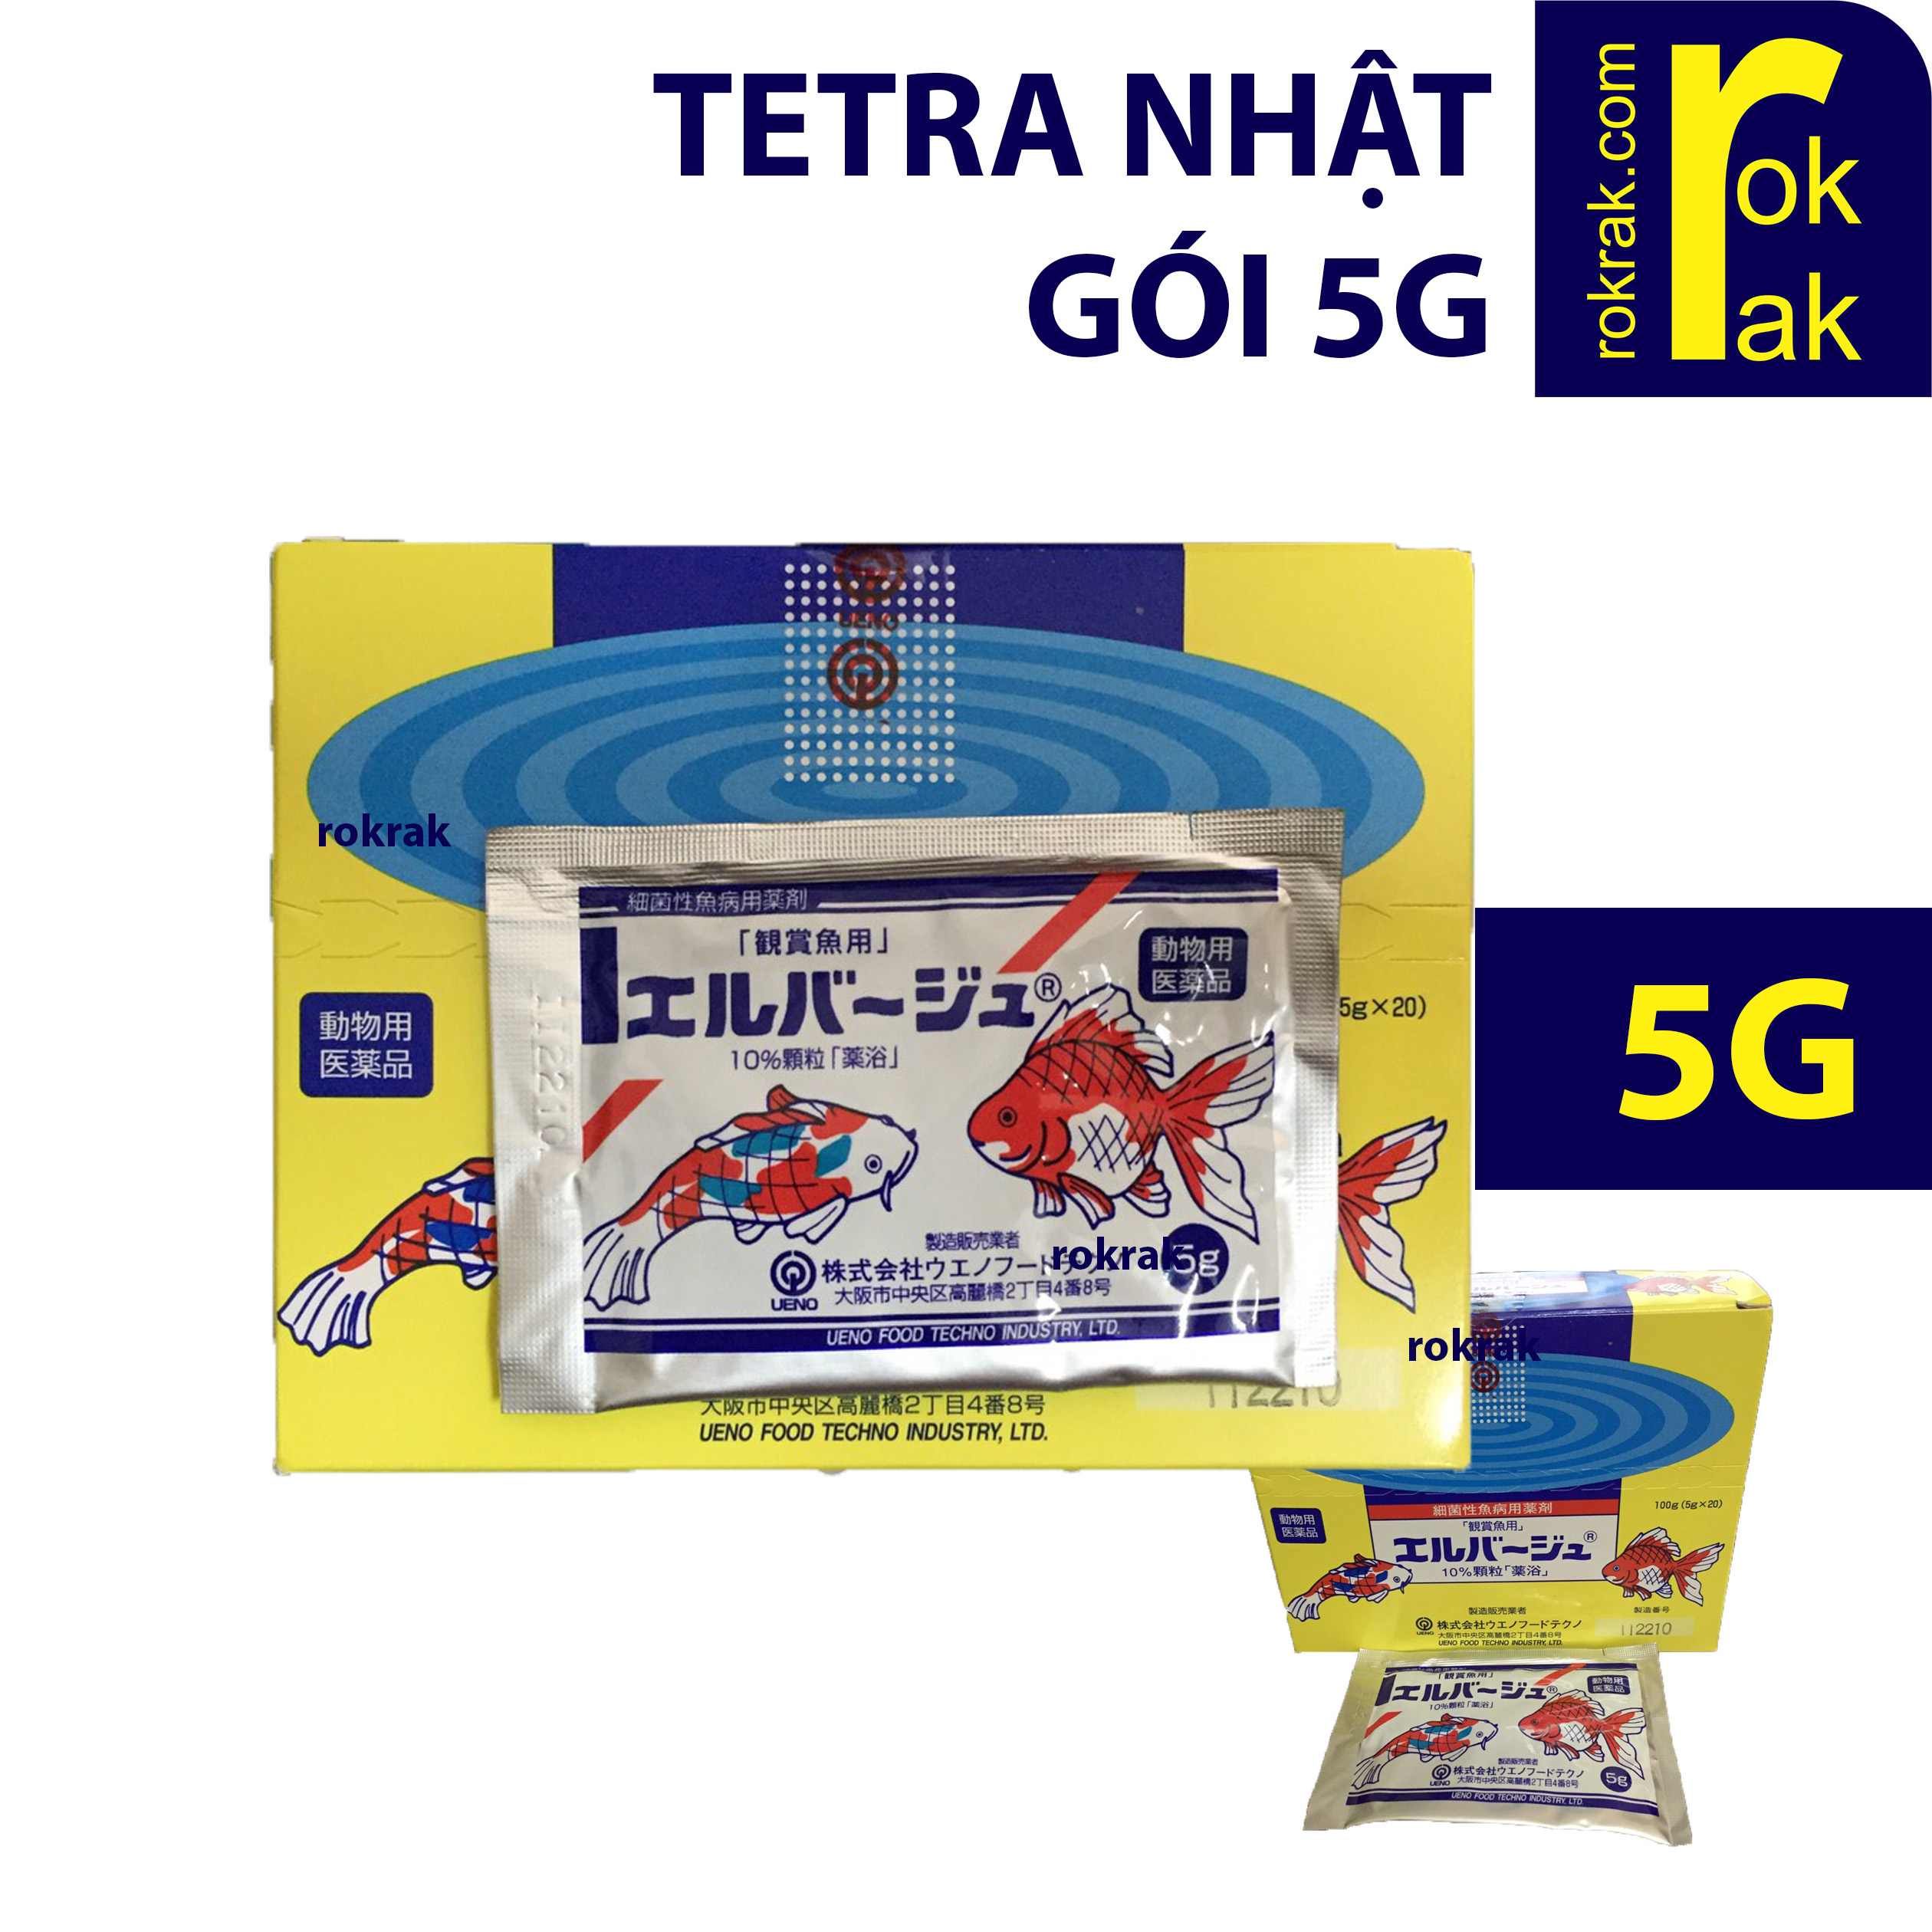 Tetra Nhật gói 5g cho cá khỏe mạnh UENO FOOD TECHNO INDUSTRY LTD